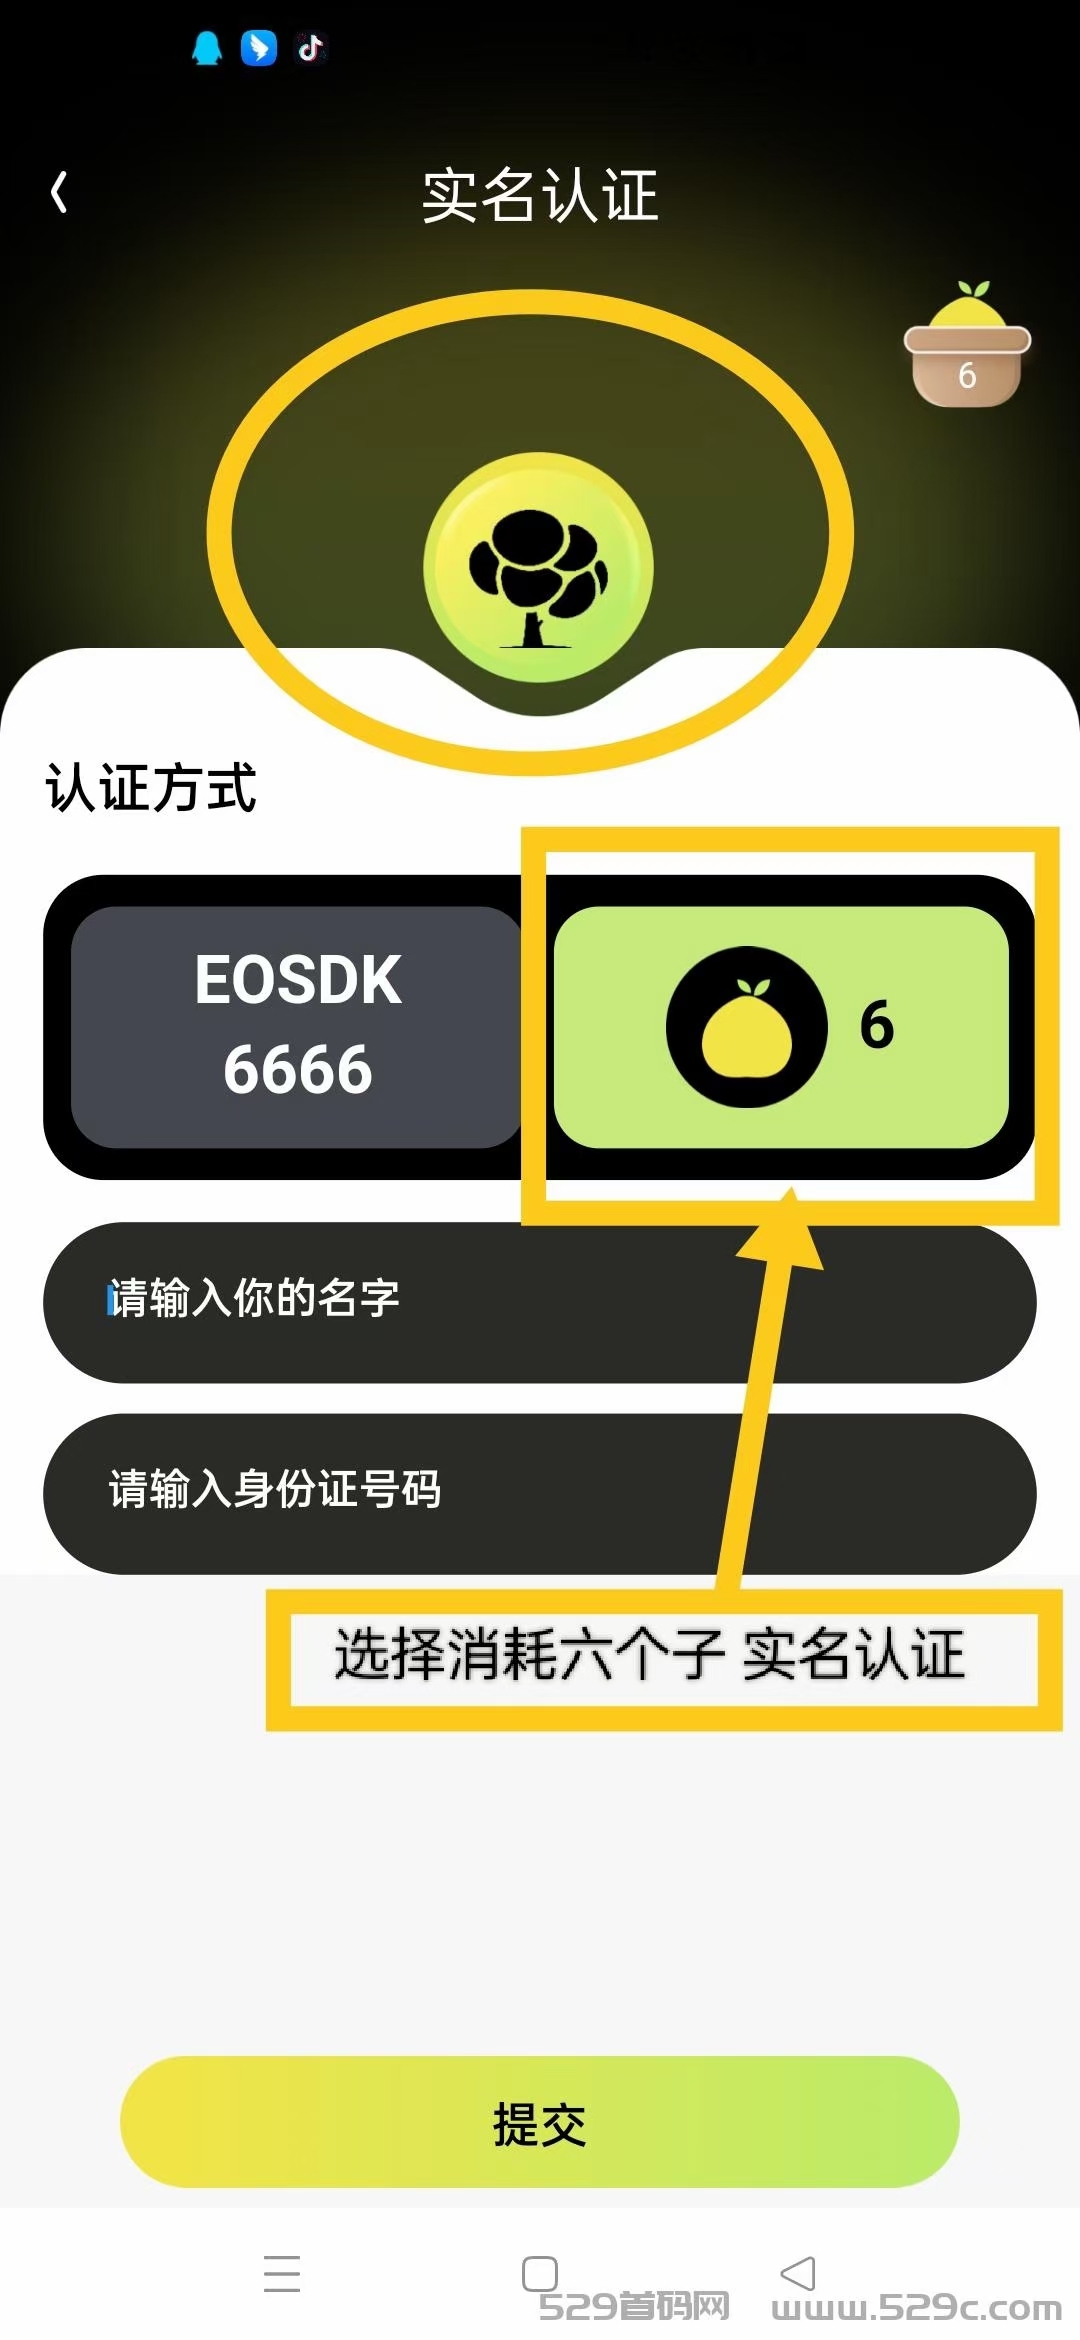 最强零撸挖b～（柚子社区EOS领导人打造的游戏代b） 金来柚 - 315首码项目网-315首码项目网